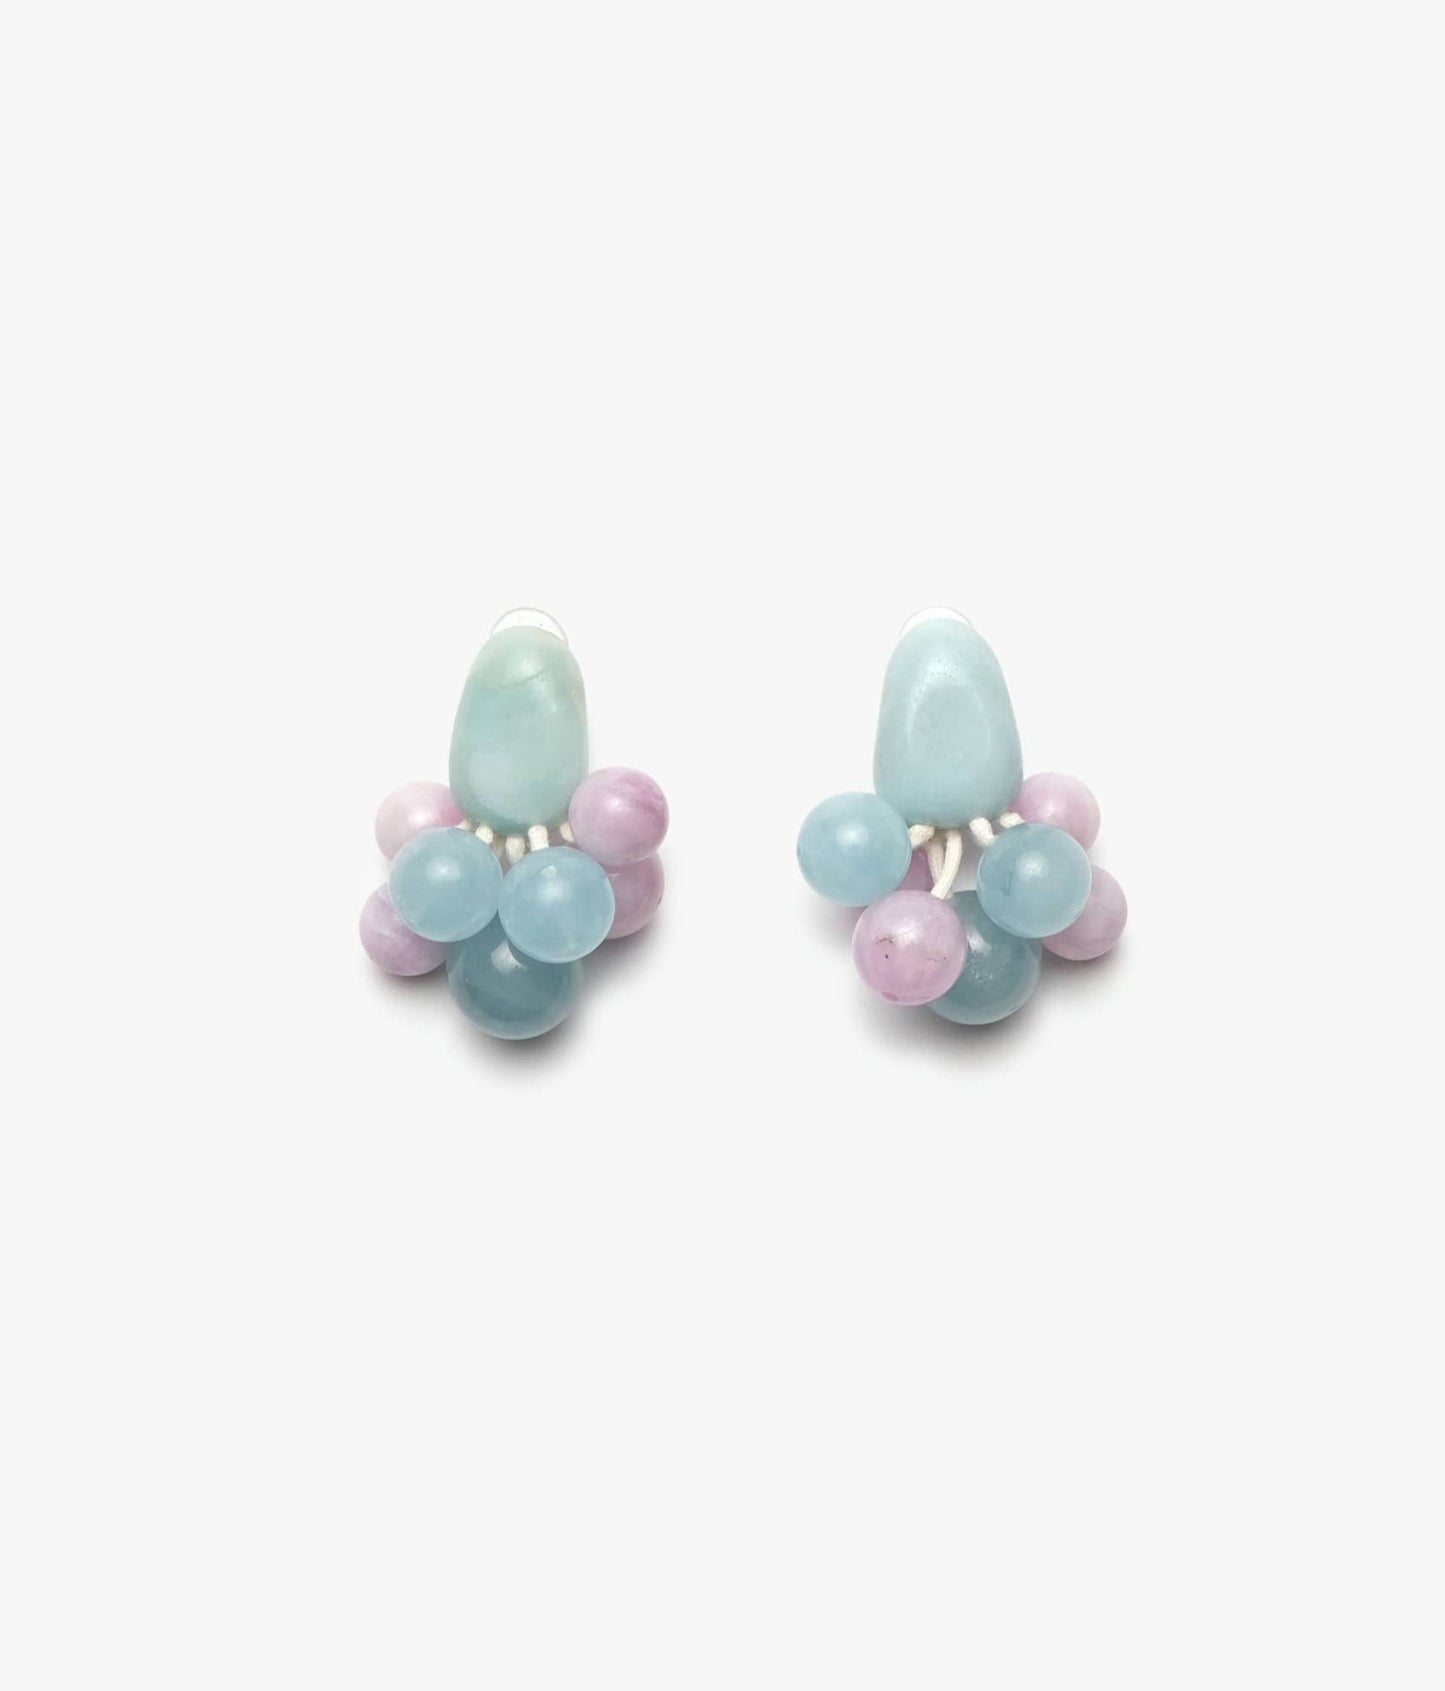 Earrings in aquamarine, chrome calcedone, lavender kunzite